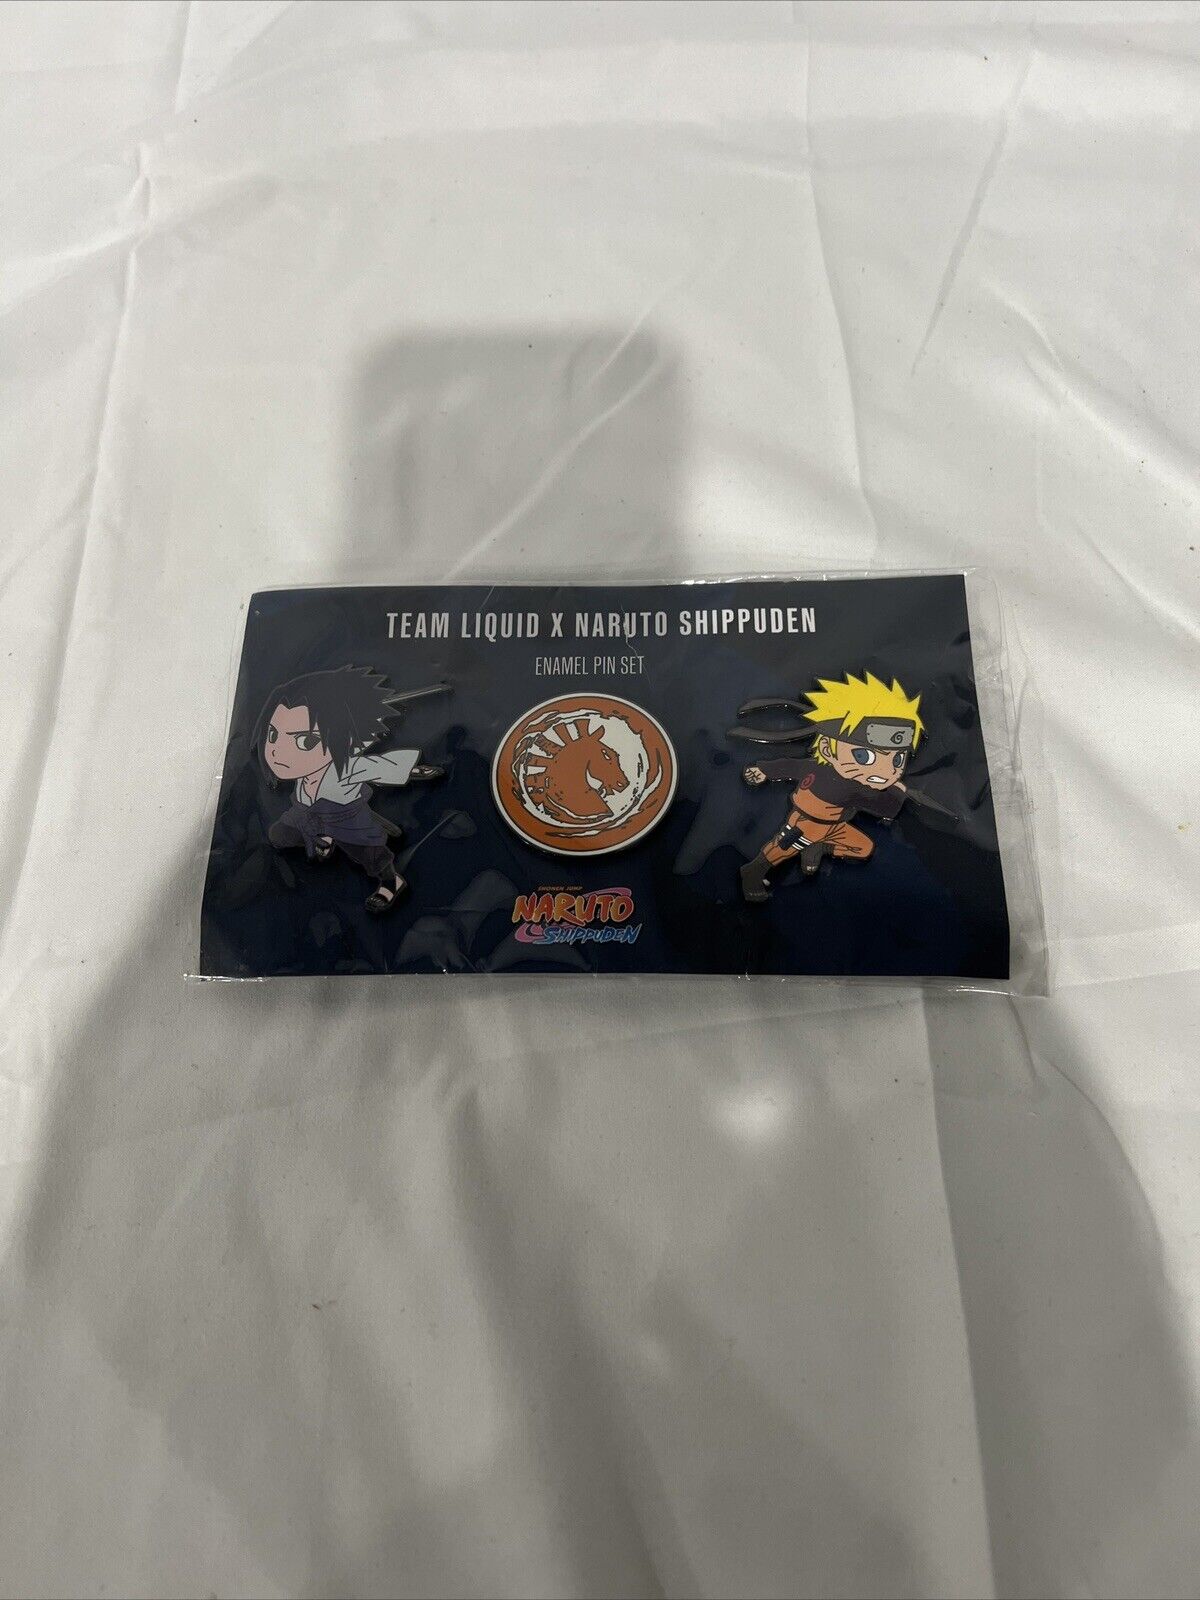 Naruto Shippuden Pin Collectible